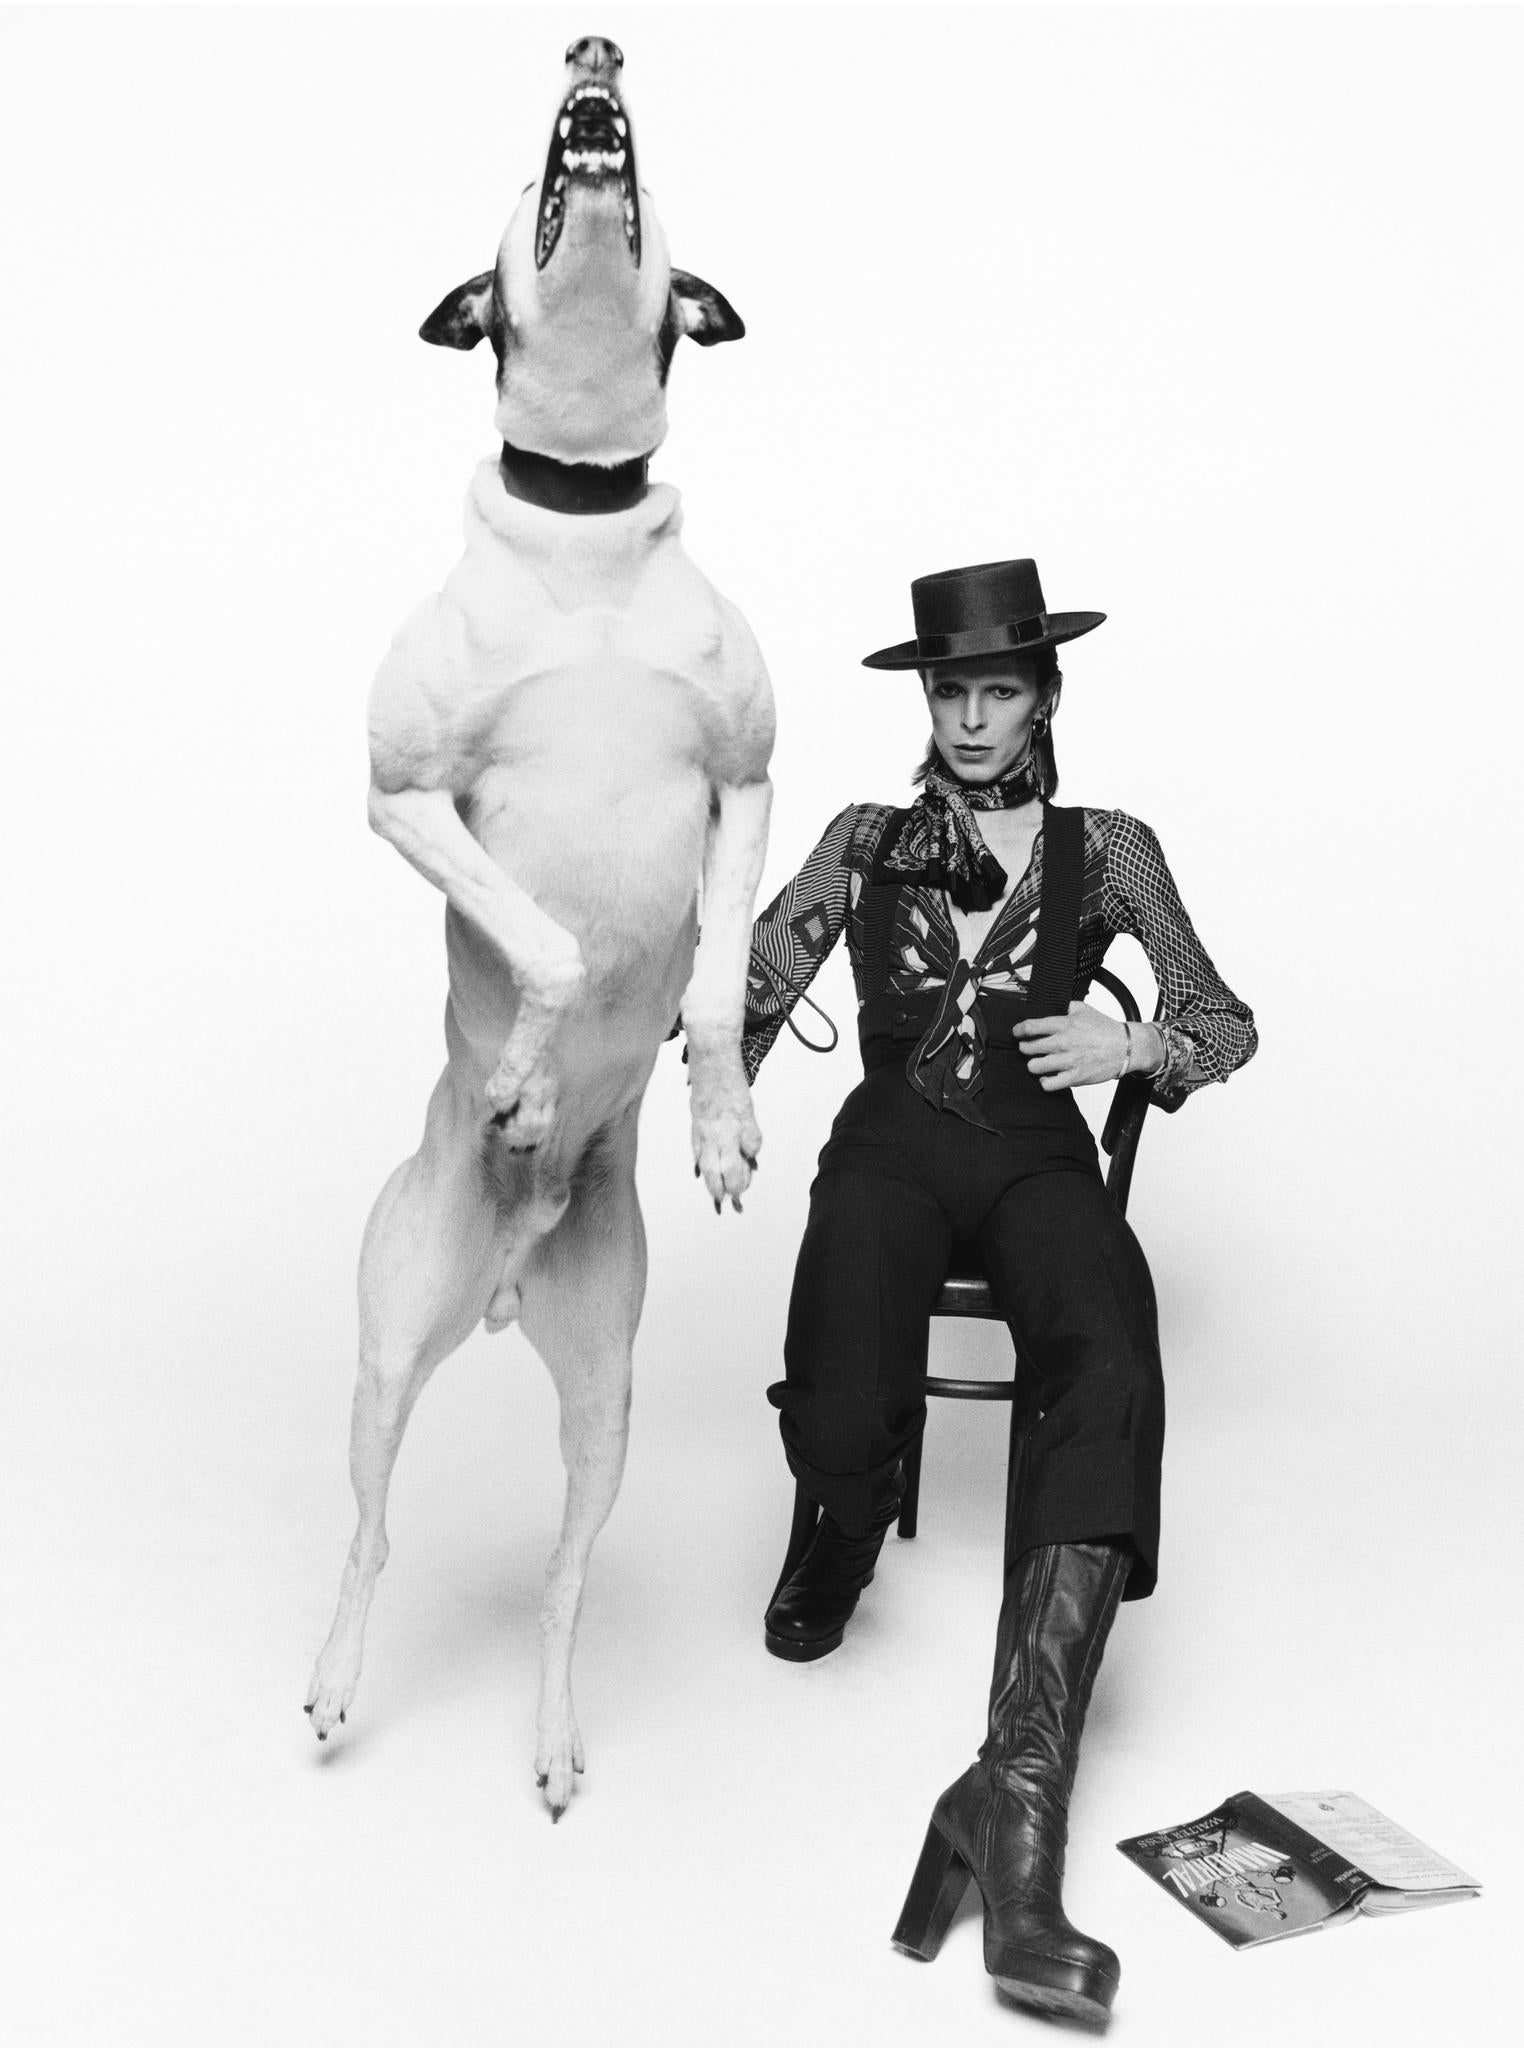 David Bowie bei der Arbeit an dem Albumcover für Diamond Dogs, London - Terry O'Neill
Signiert und nummeriert
Silber-Gelatine-Druck
16 x 12 Zoll - £6,000
34 x 24 Zoll - £18.000
40 x 30 Zoll - £24.000
Ab einer Auflage von 50 + 10 APs

Terry O'Neill